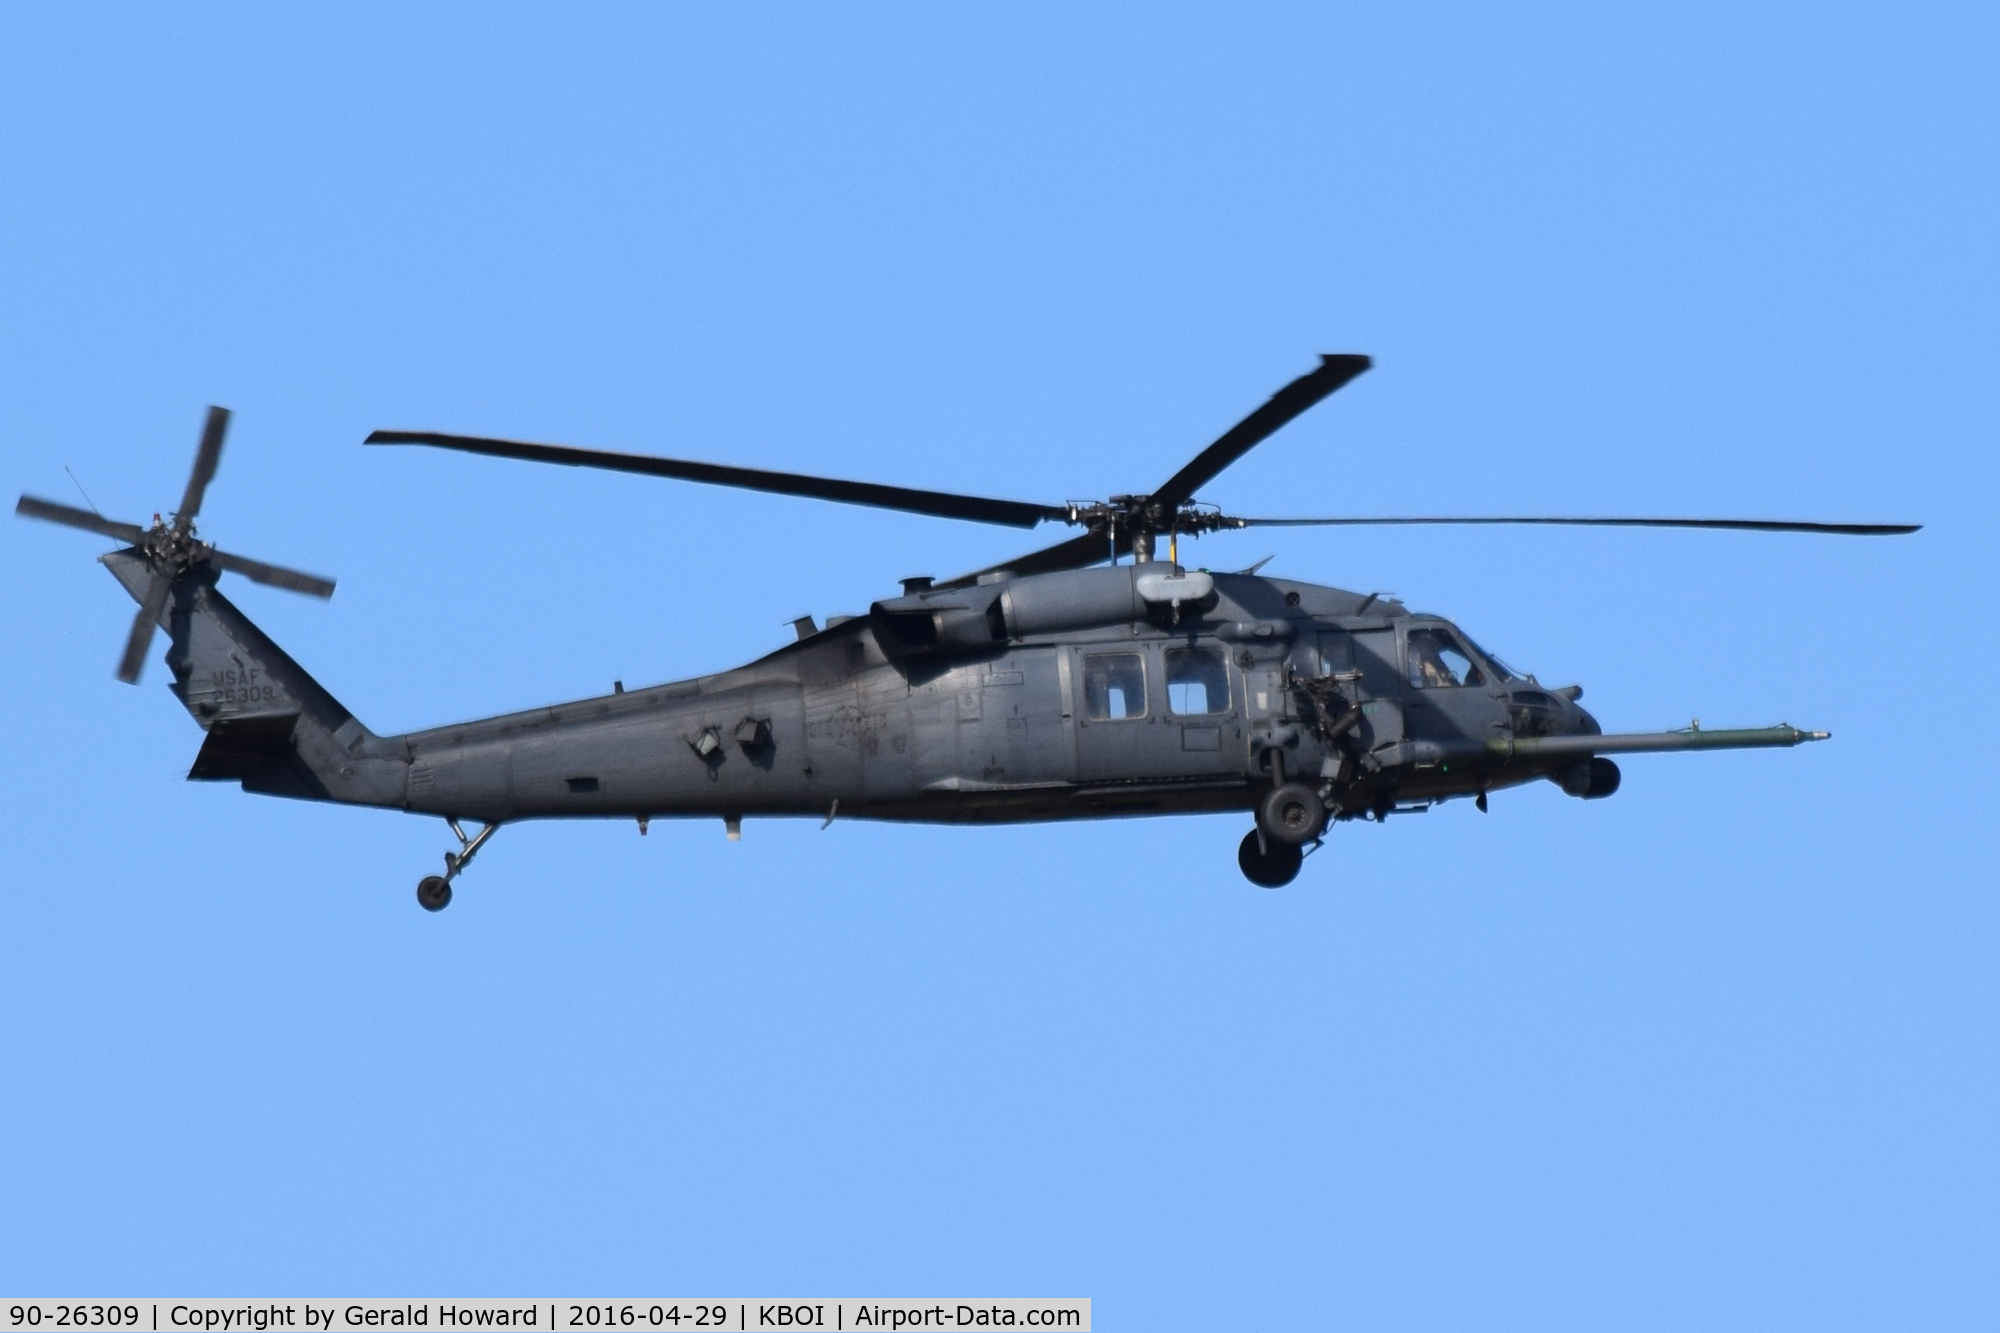 90-26309, 1990 Sikorsky HH-60G Pave Hawk C/N 70-1539, Departing BOI